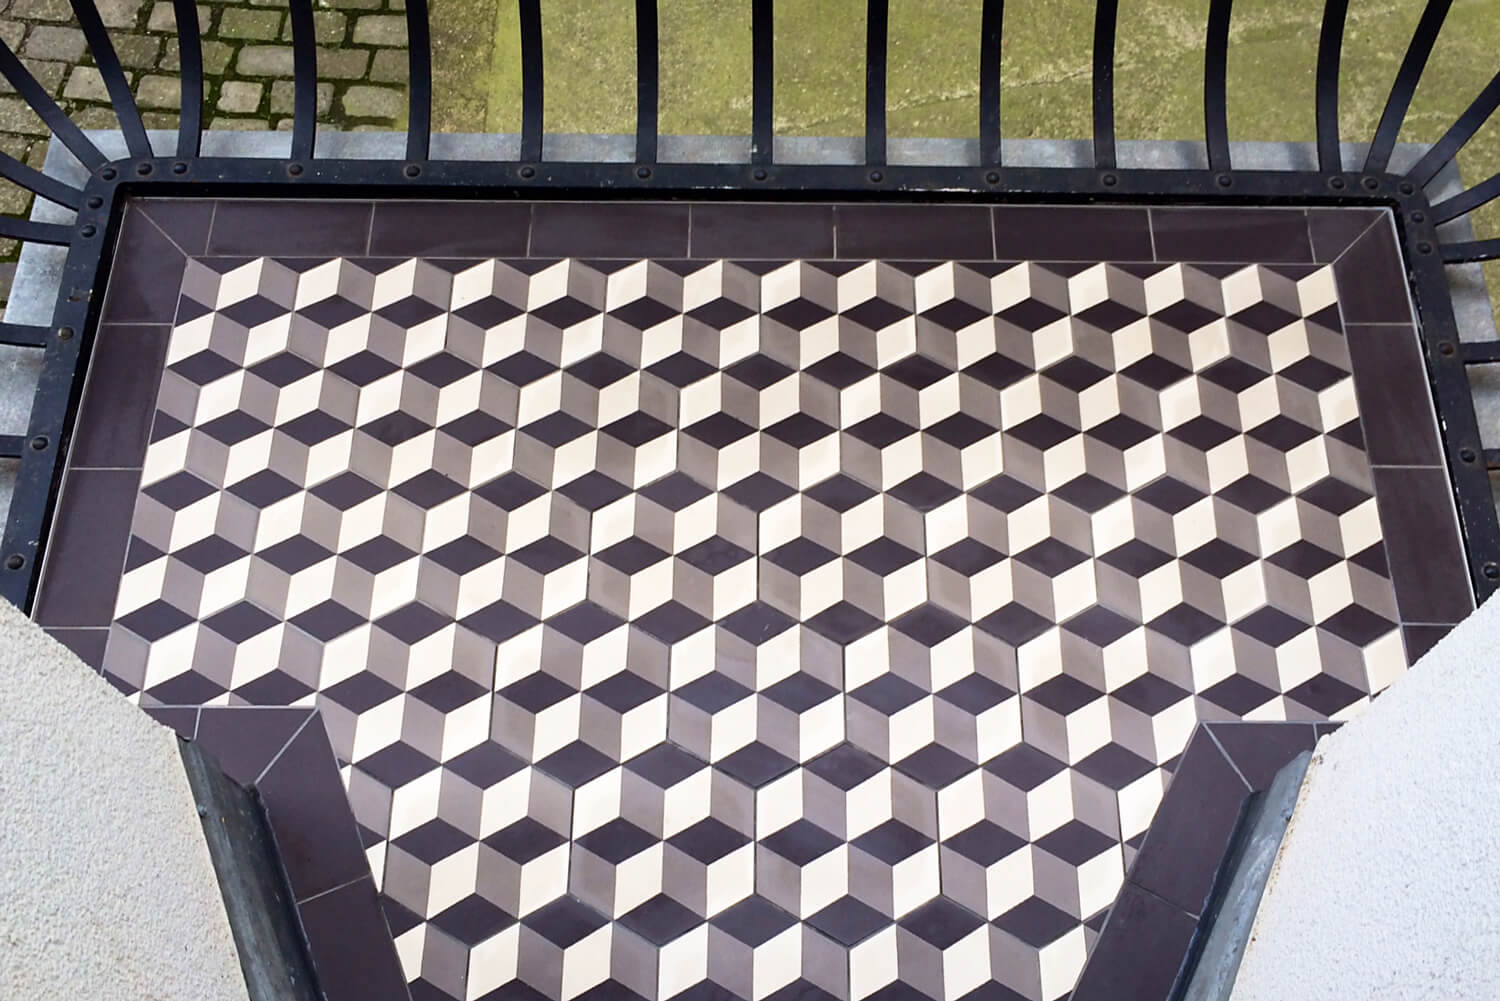 Sechseckfliesen auf dem Balkon, altes dreidimensionales Muster, mittel-braun, weiss, anthrazit, von Golem